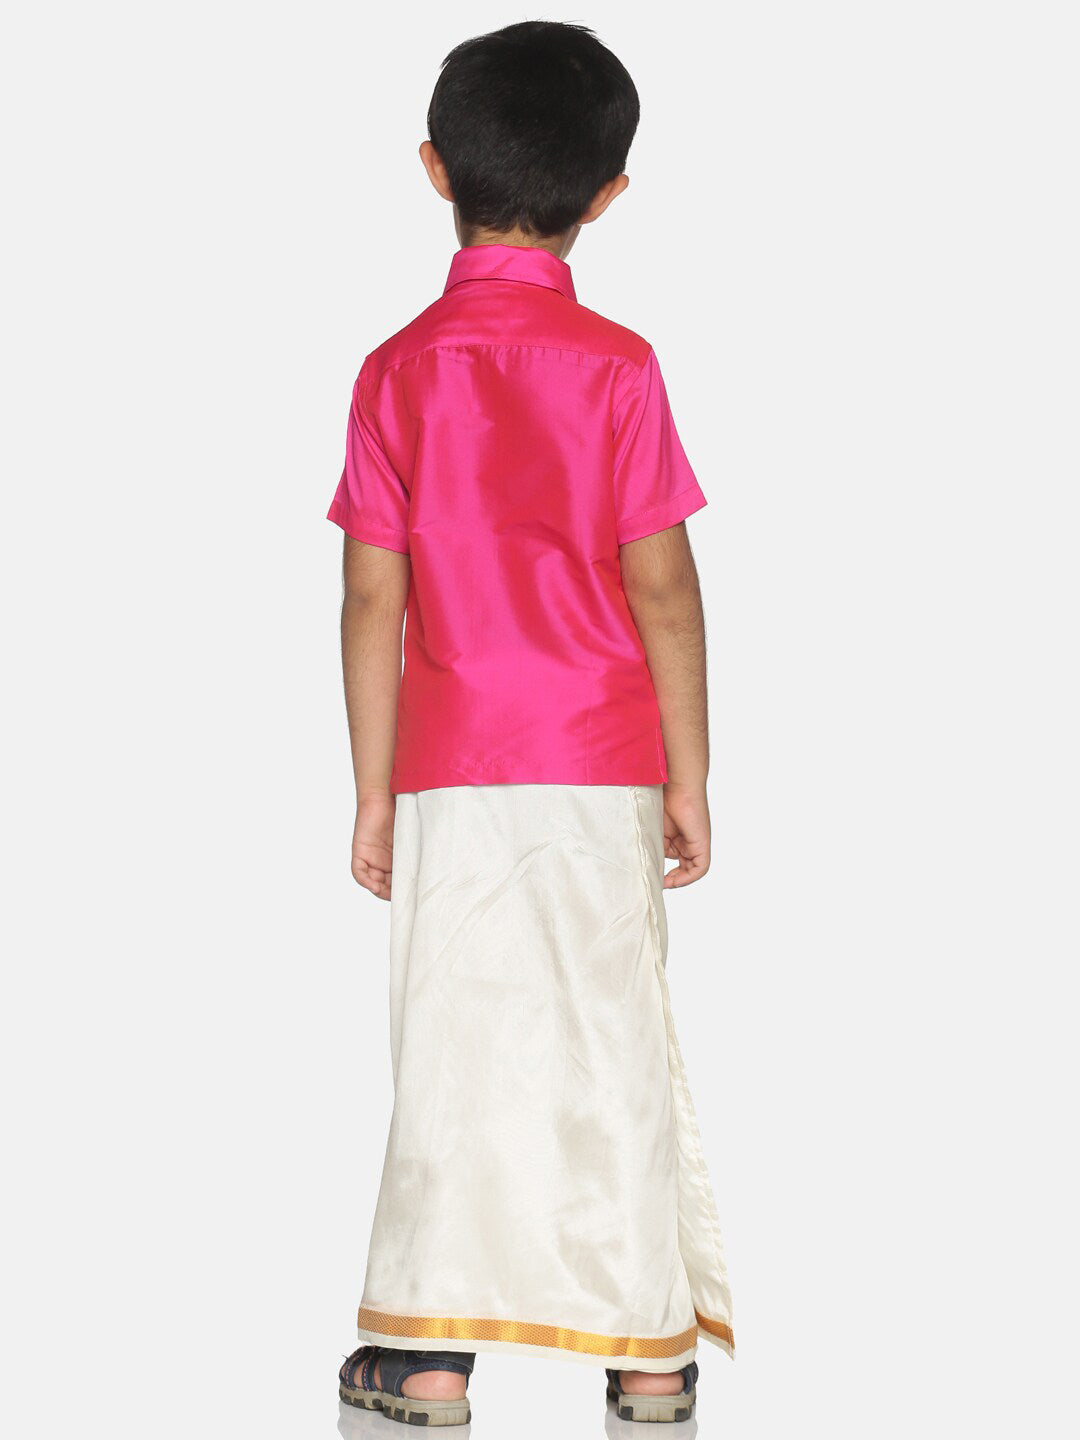 Sethukrishna Boys Pink & Cream-Coloured Solid Shirt and Veshti Set - Distacart